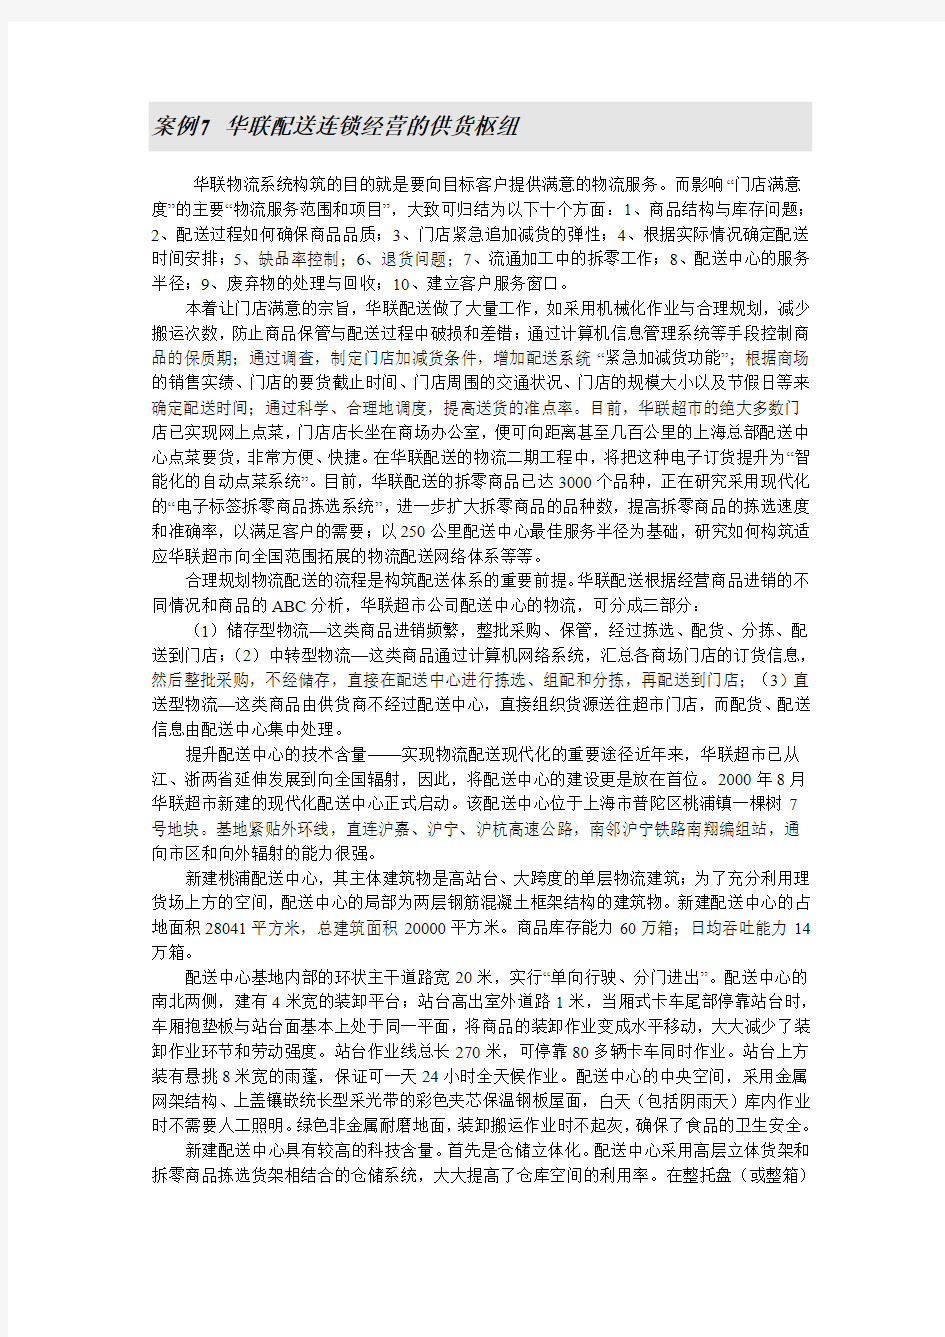 电子课件 《物流管理》刘斌 案例7 华联配送连锁经营的供货枢纽